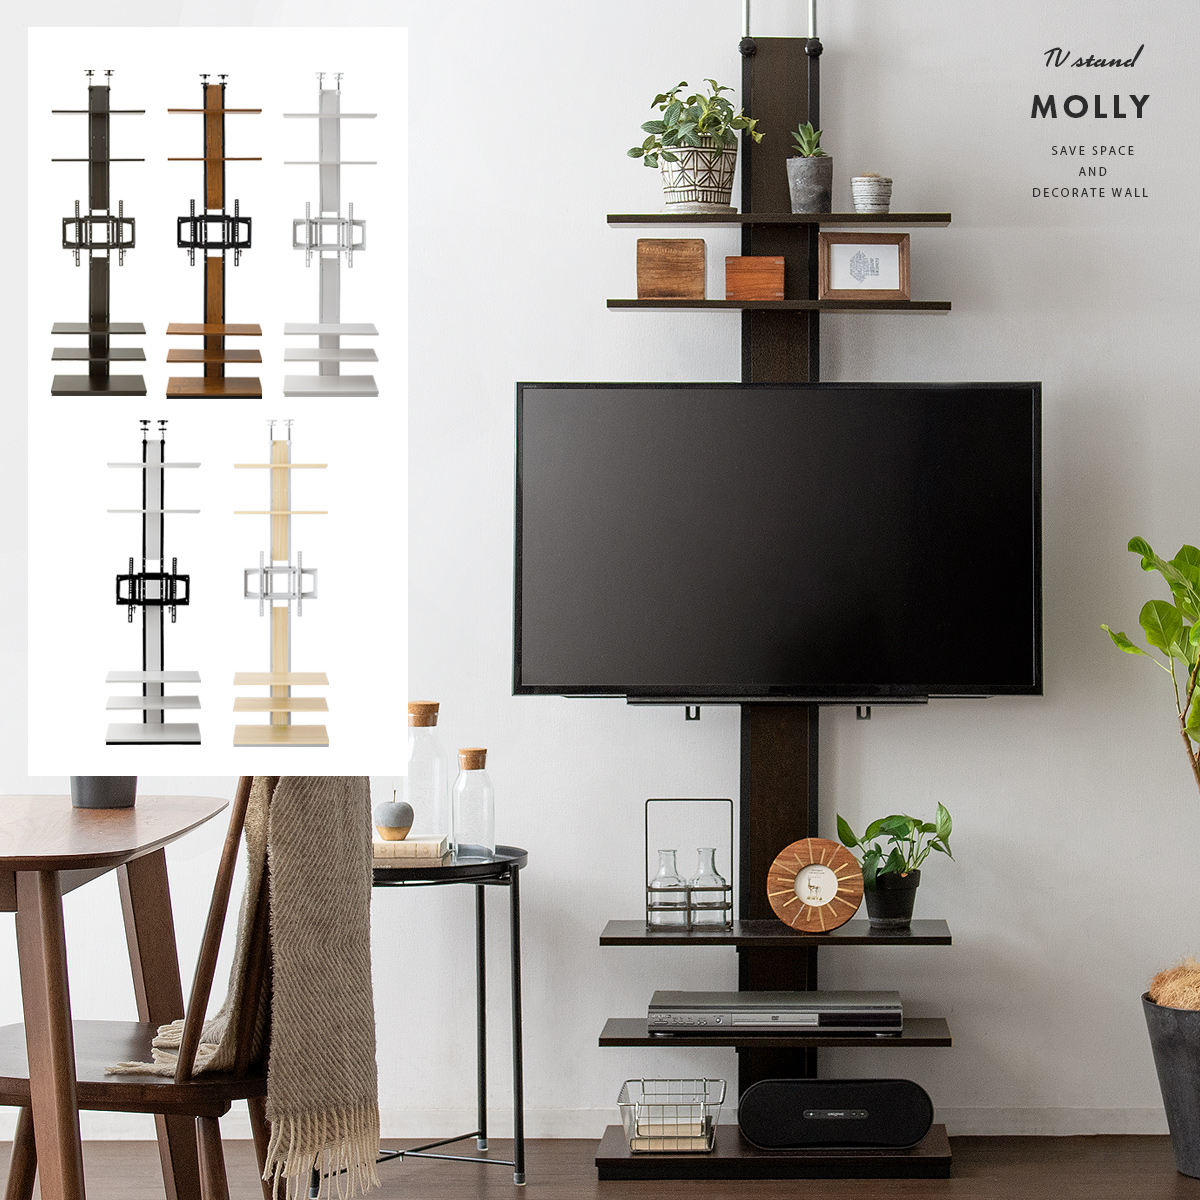 壁掛け風つっぱりテレビスタンド Molly モリー 北欧インテリア 家具の通販エア リゾーム